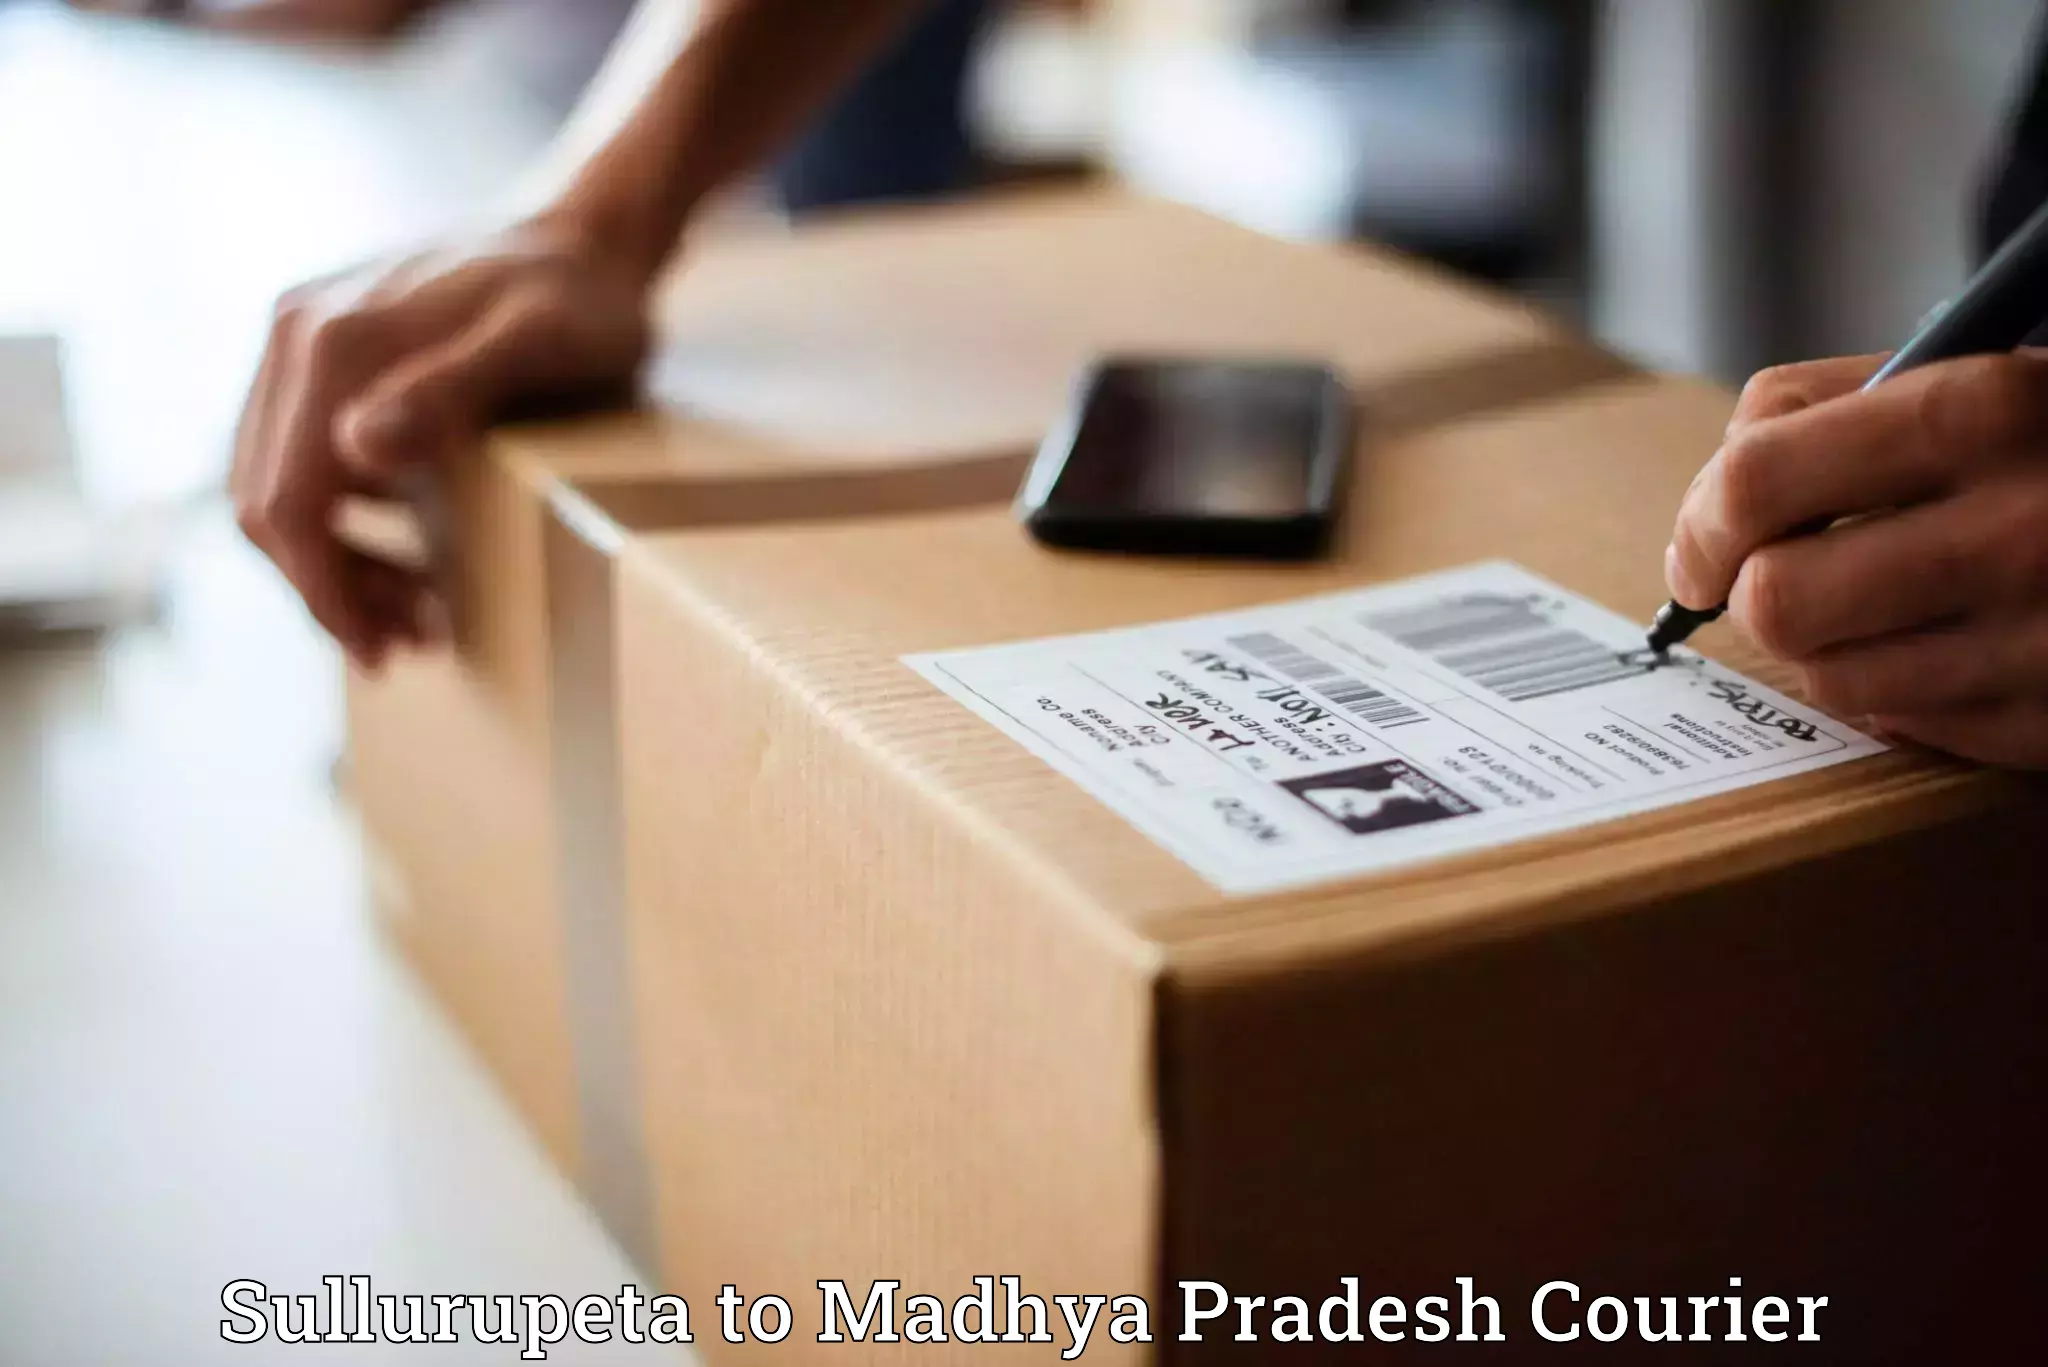 Door-to-door shipping in Sullurupeta to Rahatgarh